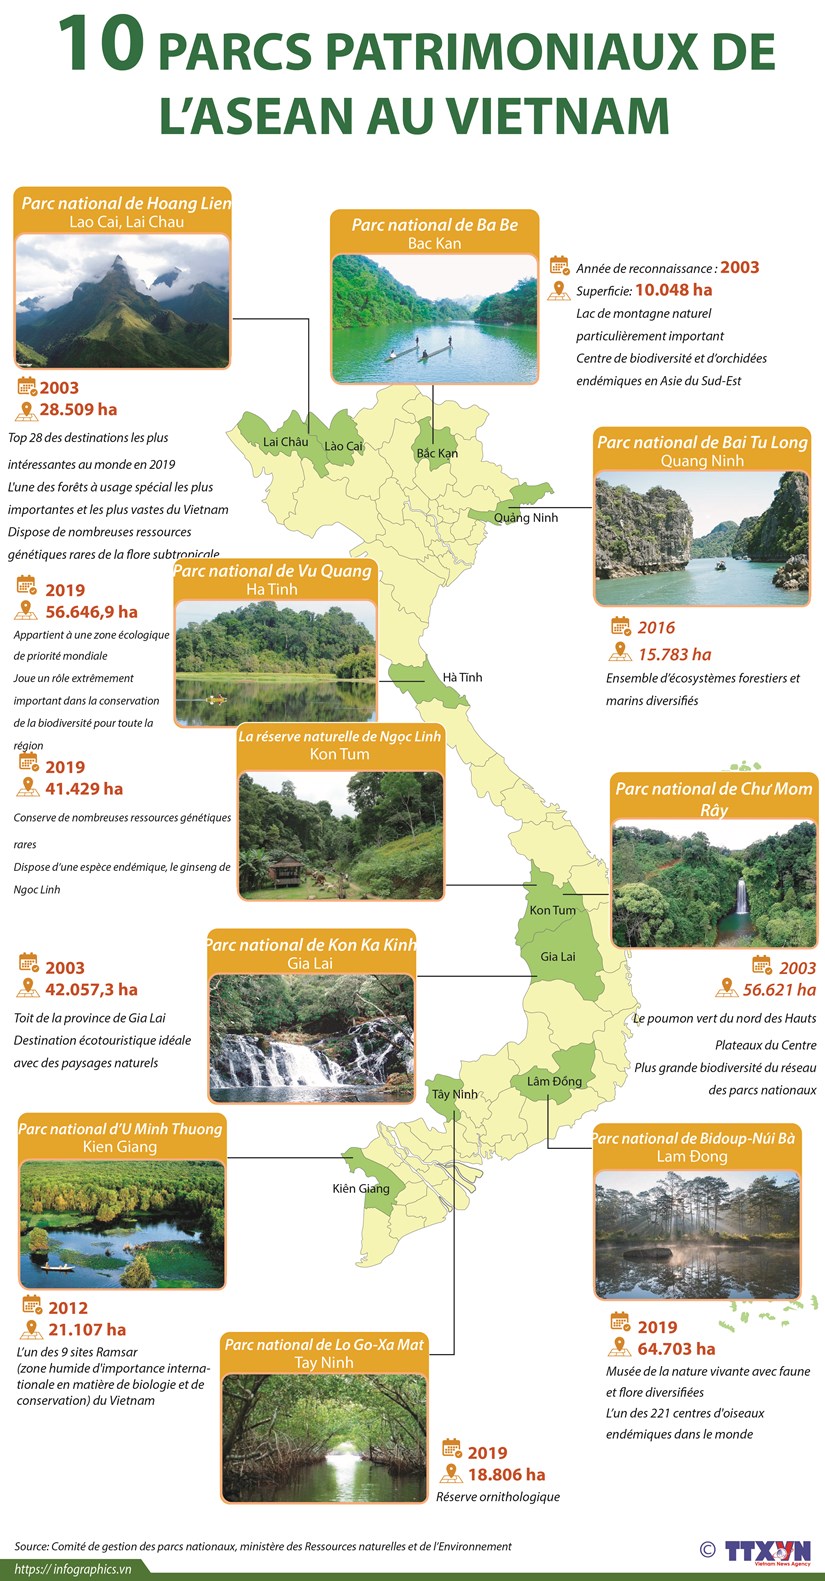 Dix parcs patrimoniaux de l'ASEAN au Vietnam hinh anh 1